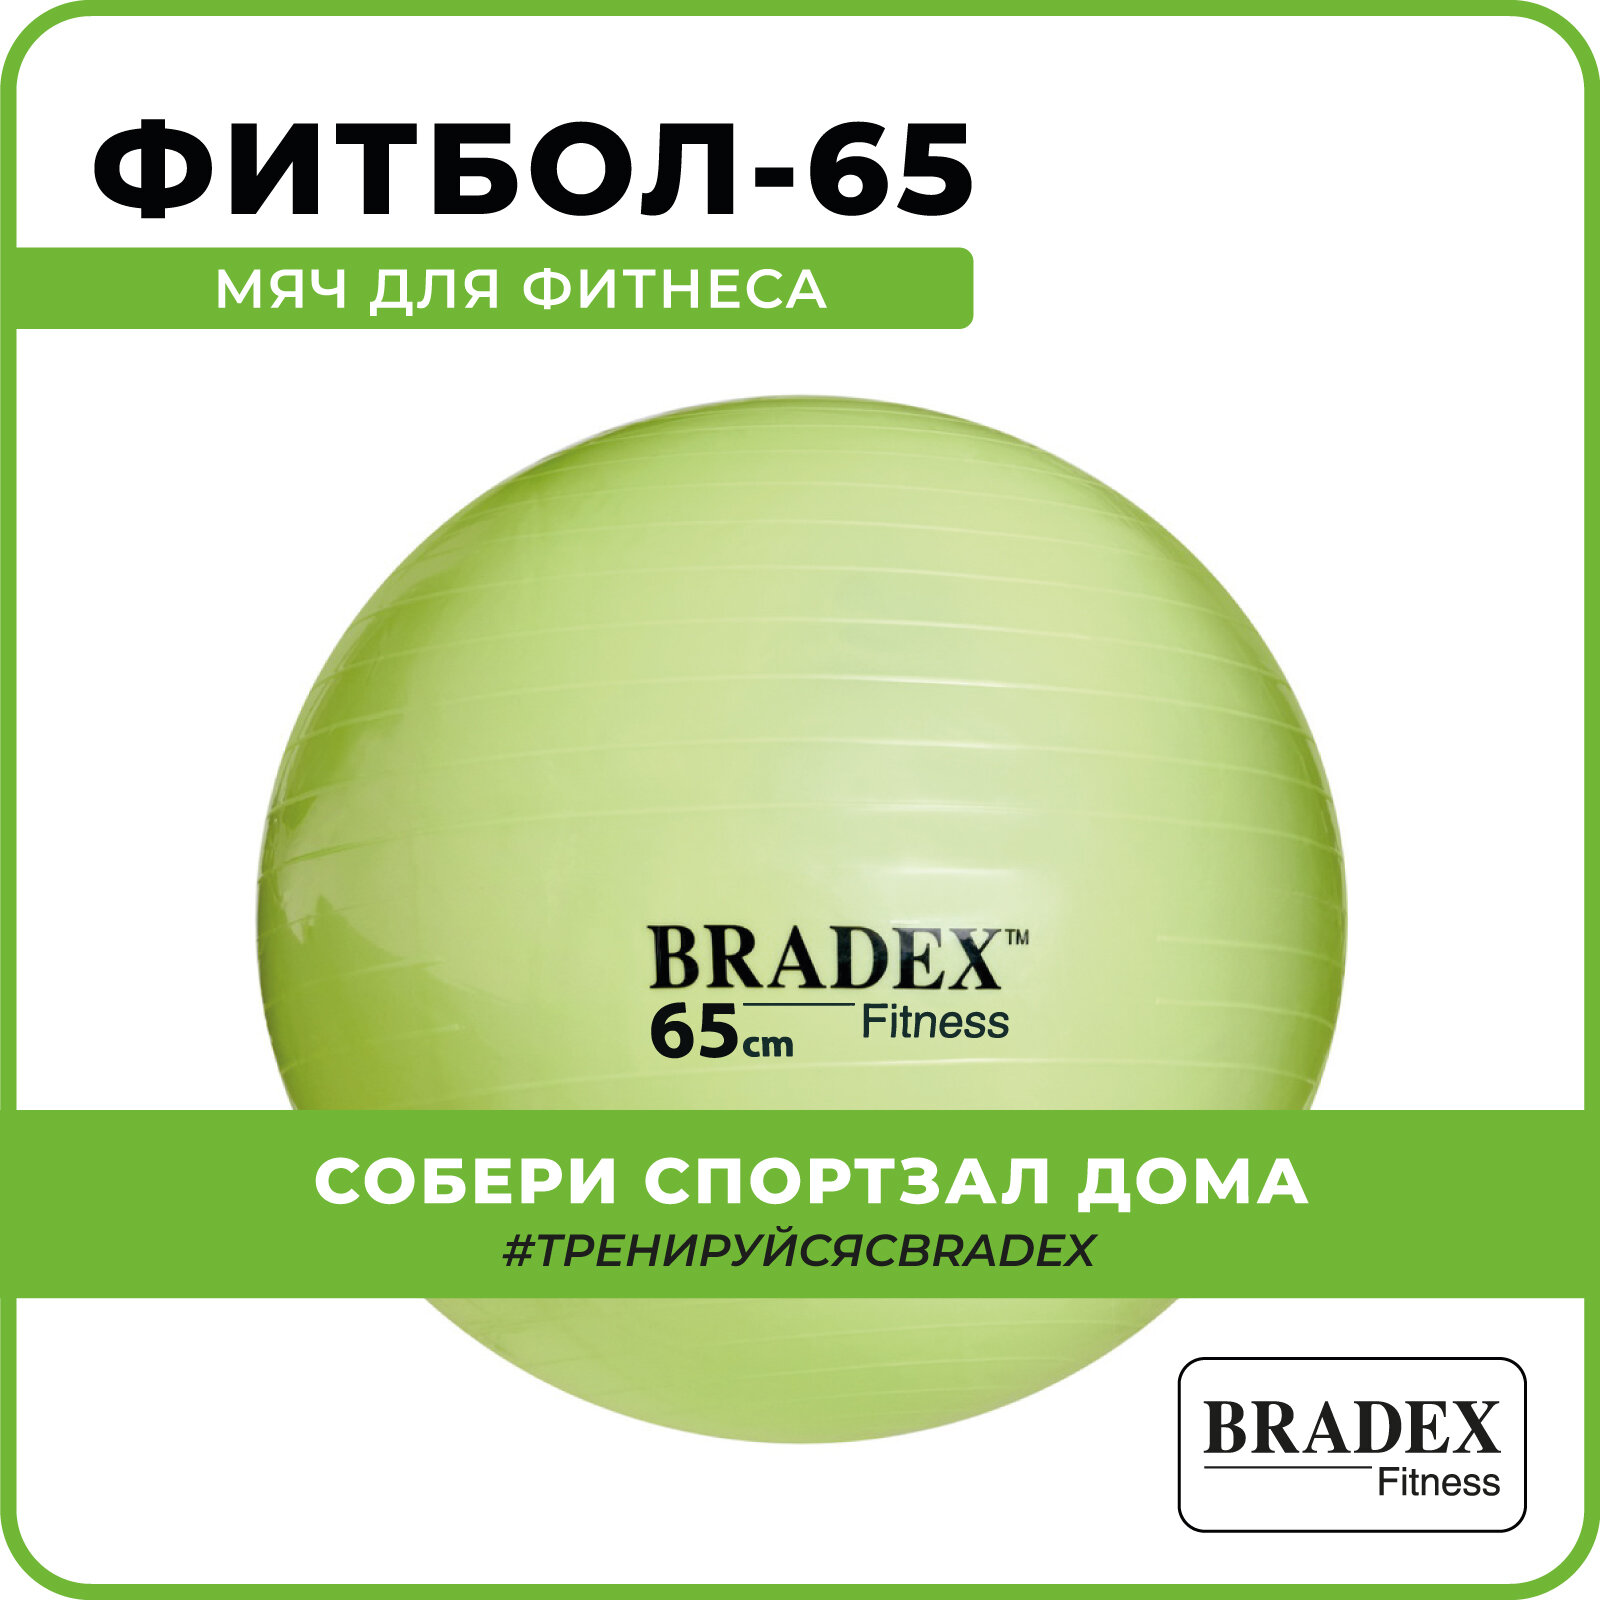 Мяч Bradex «ФИТБОЛ-65» SF 0720 для фитнеса с насосом, салатовый